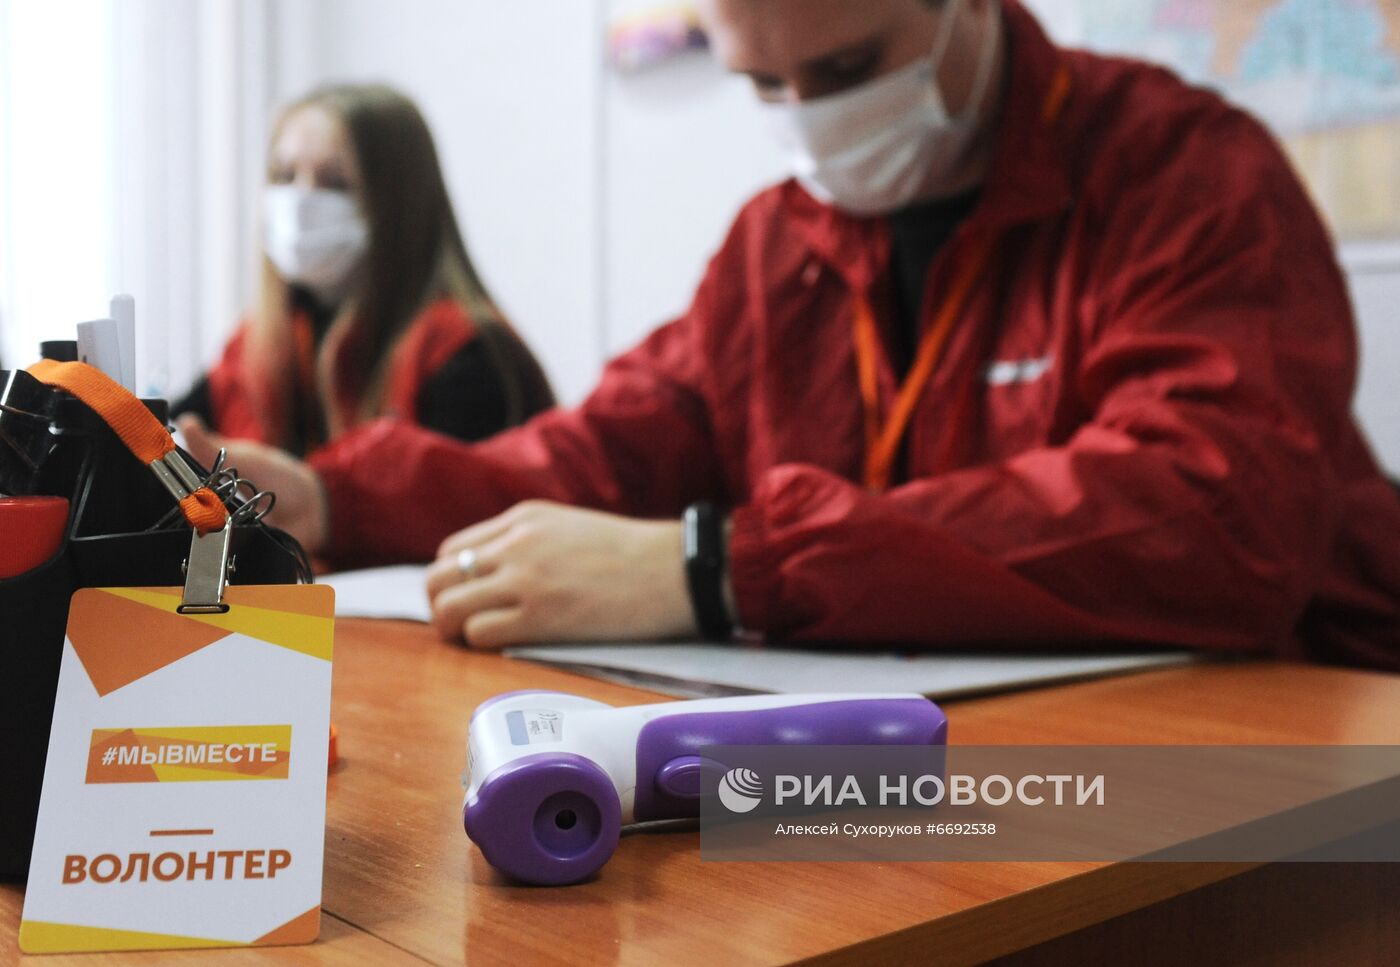 Работа волонтеров в рамках Всероссийской акции "Мы вместе" в регионах России